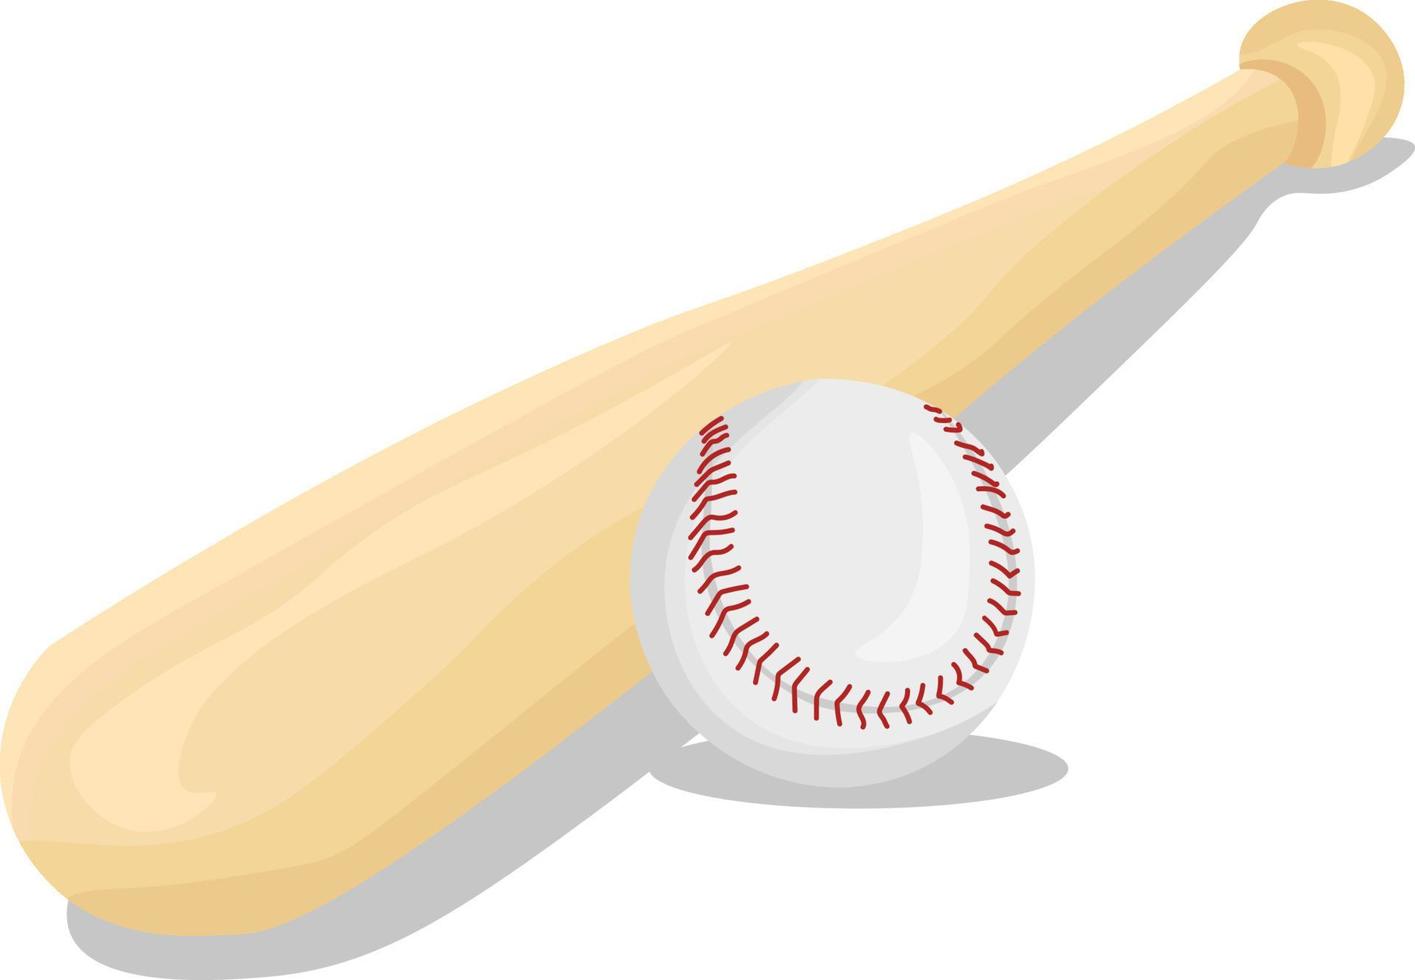 Baseball bat, illustration, vector on white background